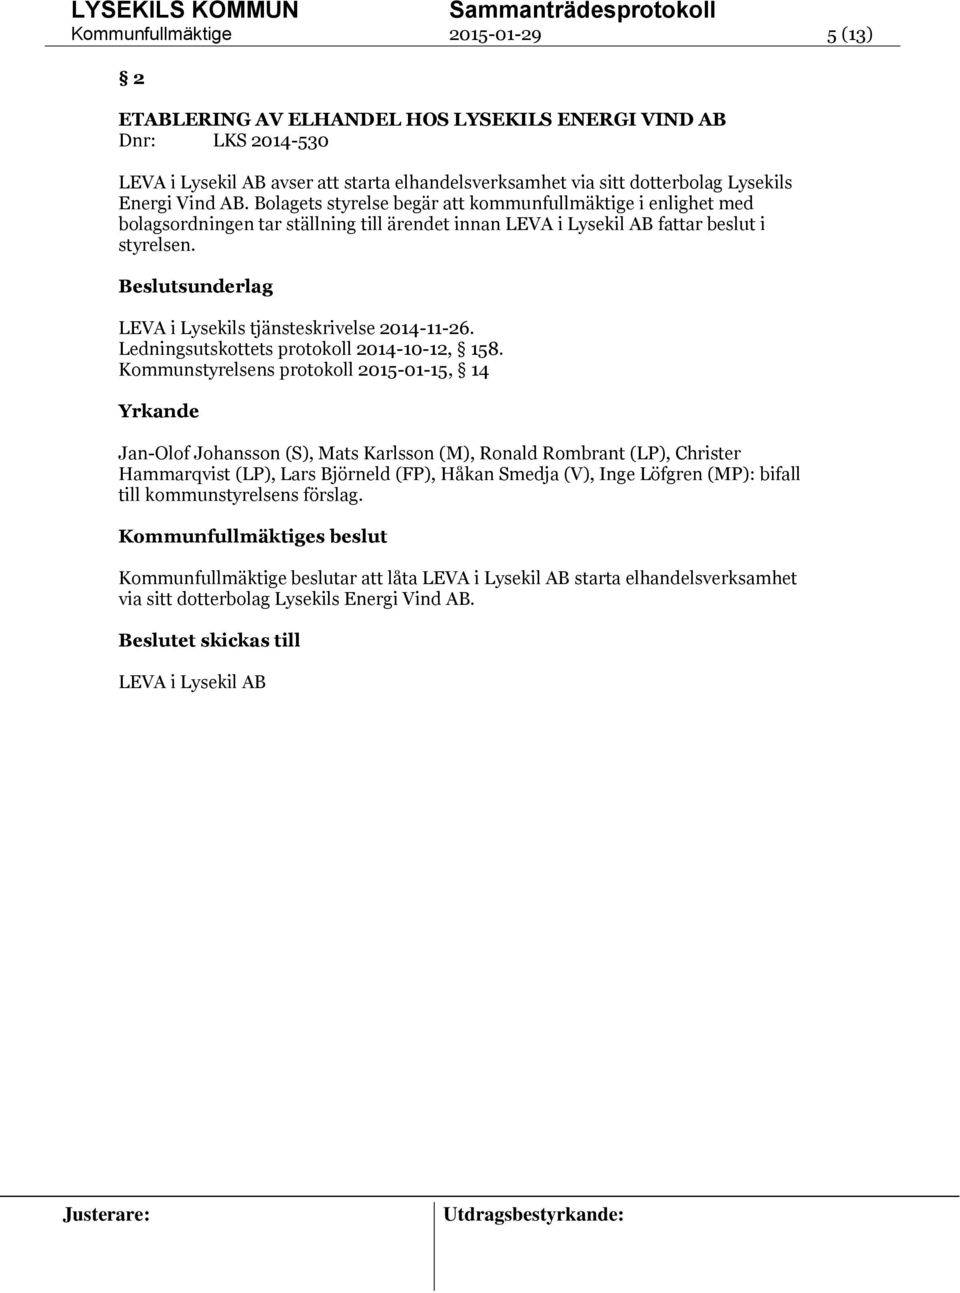 LEVA i Lysekils tjänsteskrivelse 2014-11-26. Ledningsutskottets protokoll 2014-10-12, 158.